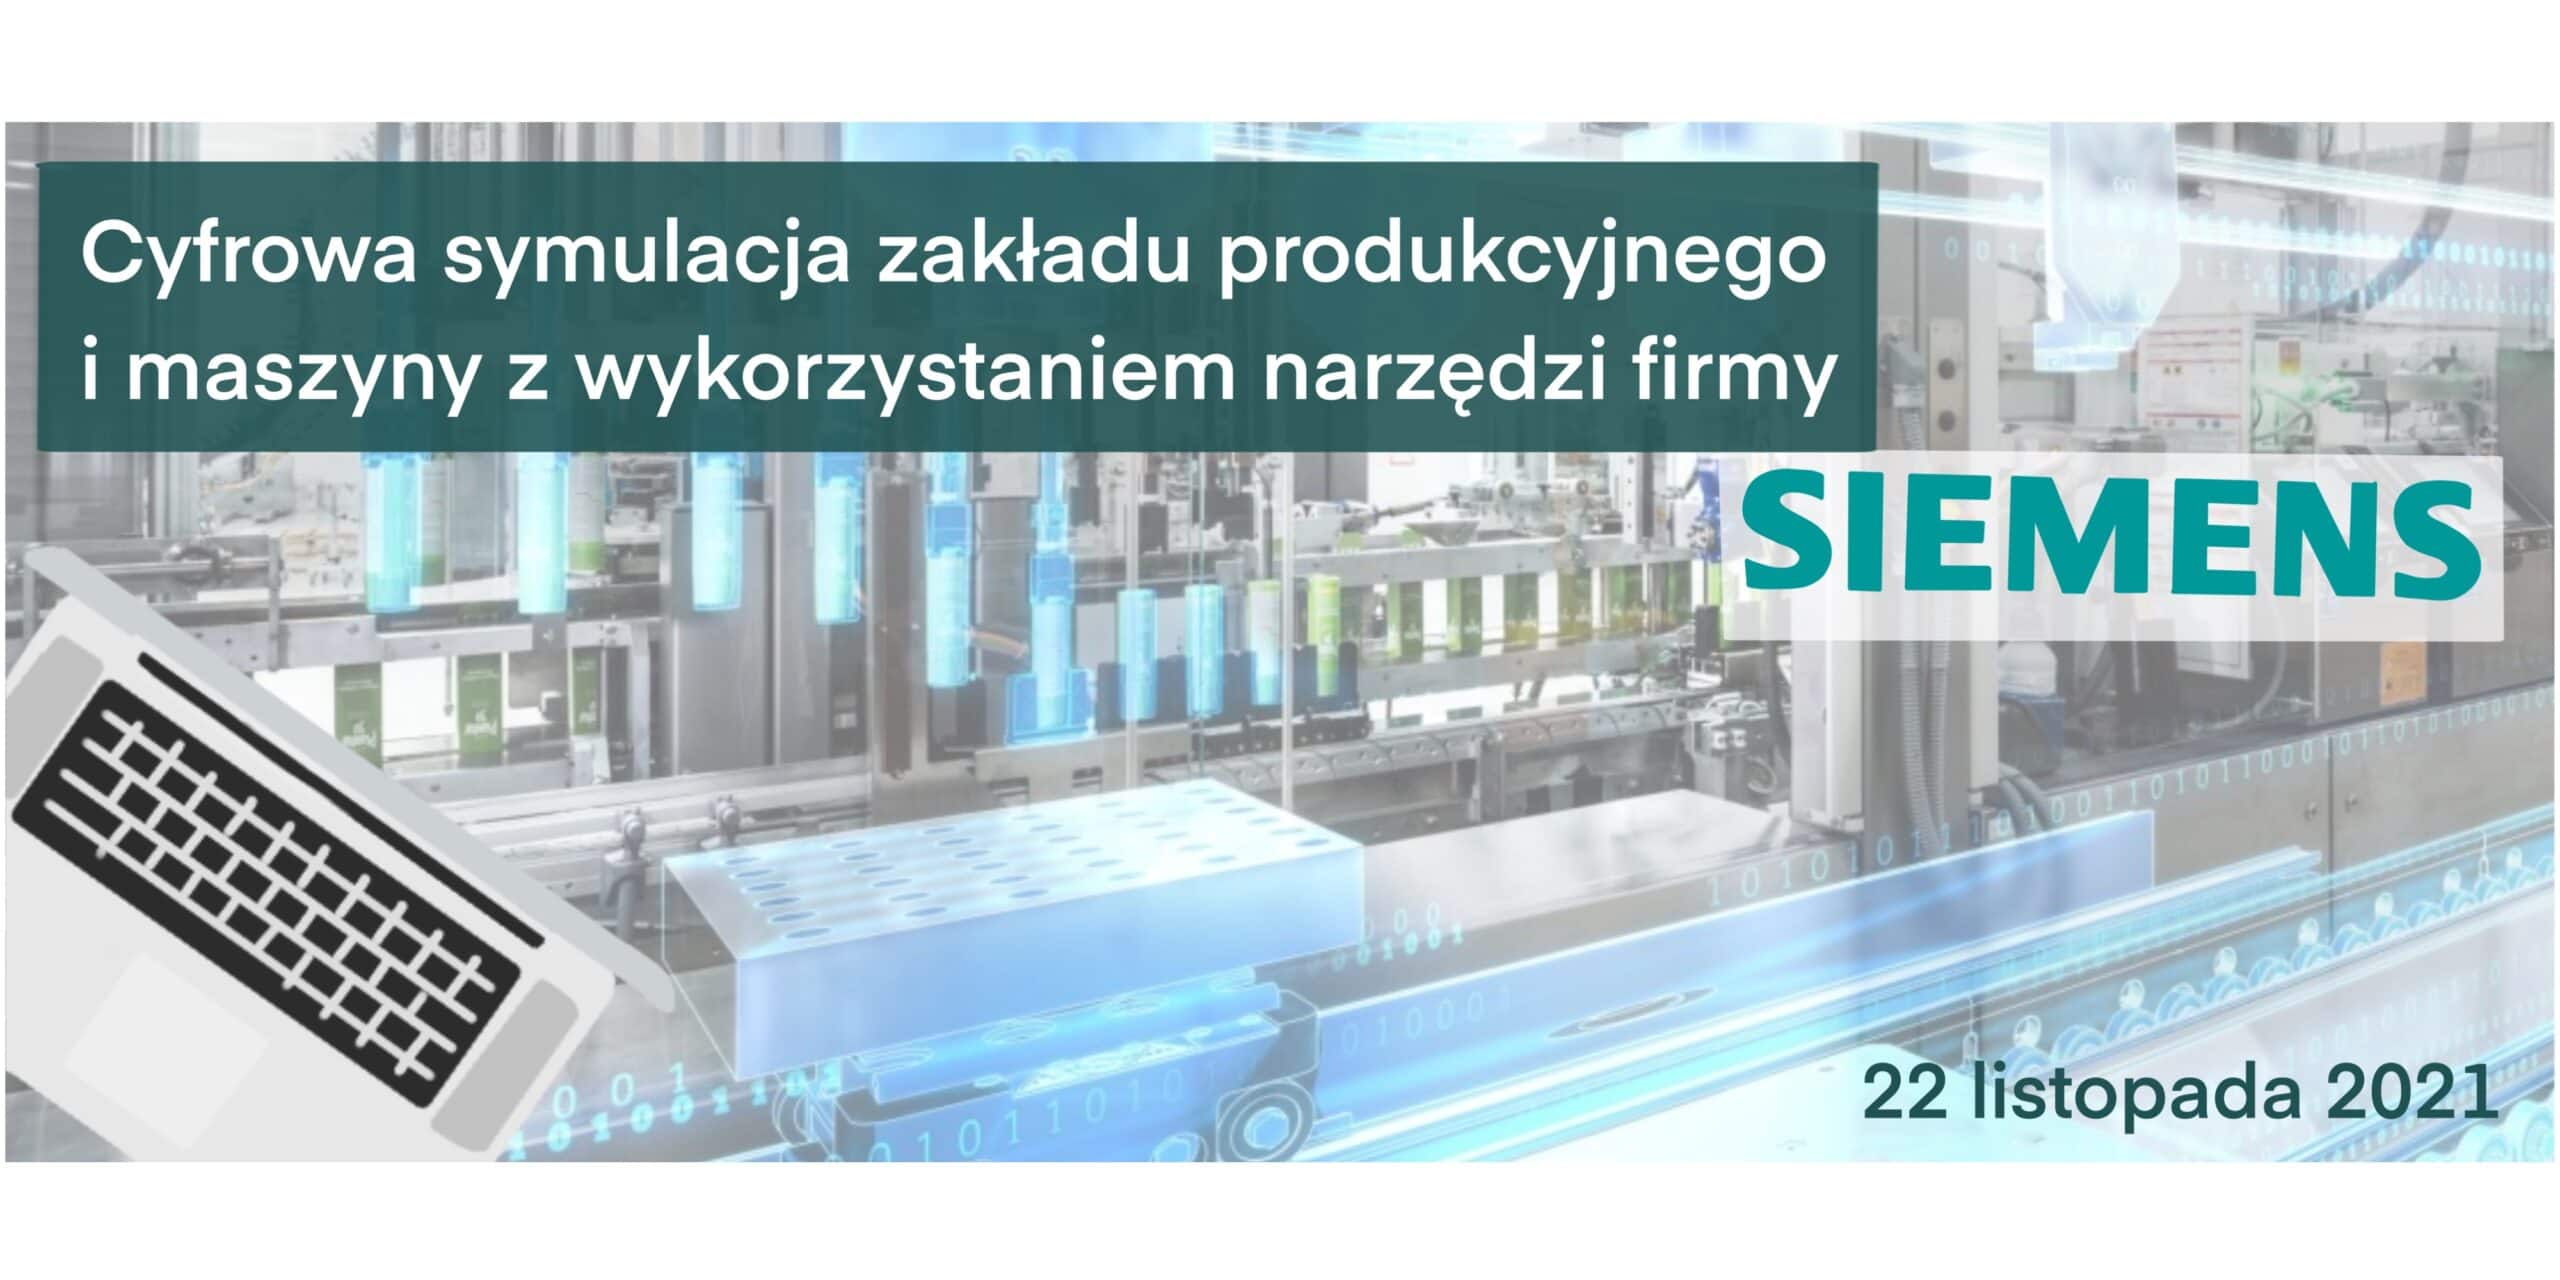 Bezpłatne szkolenie DEICy 2021: Cyfrowa symulacja zakładu produkcyjnego i maszyny z wykorzystaniem narzędzi firmy Siemens, 22.11.2021 o 10:00